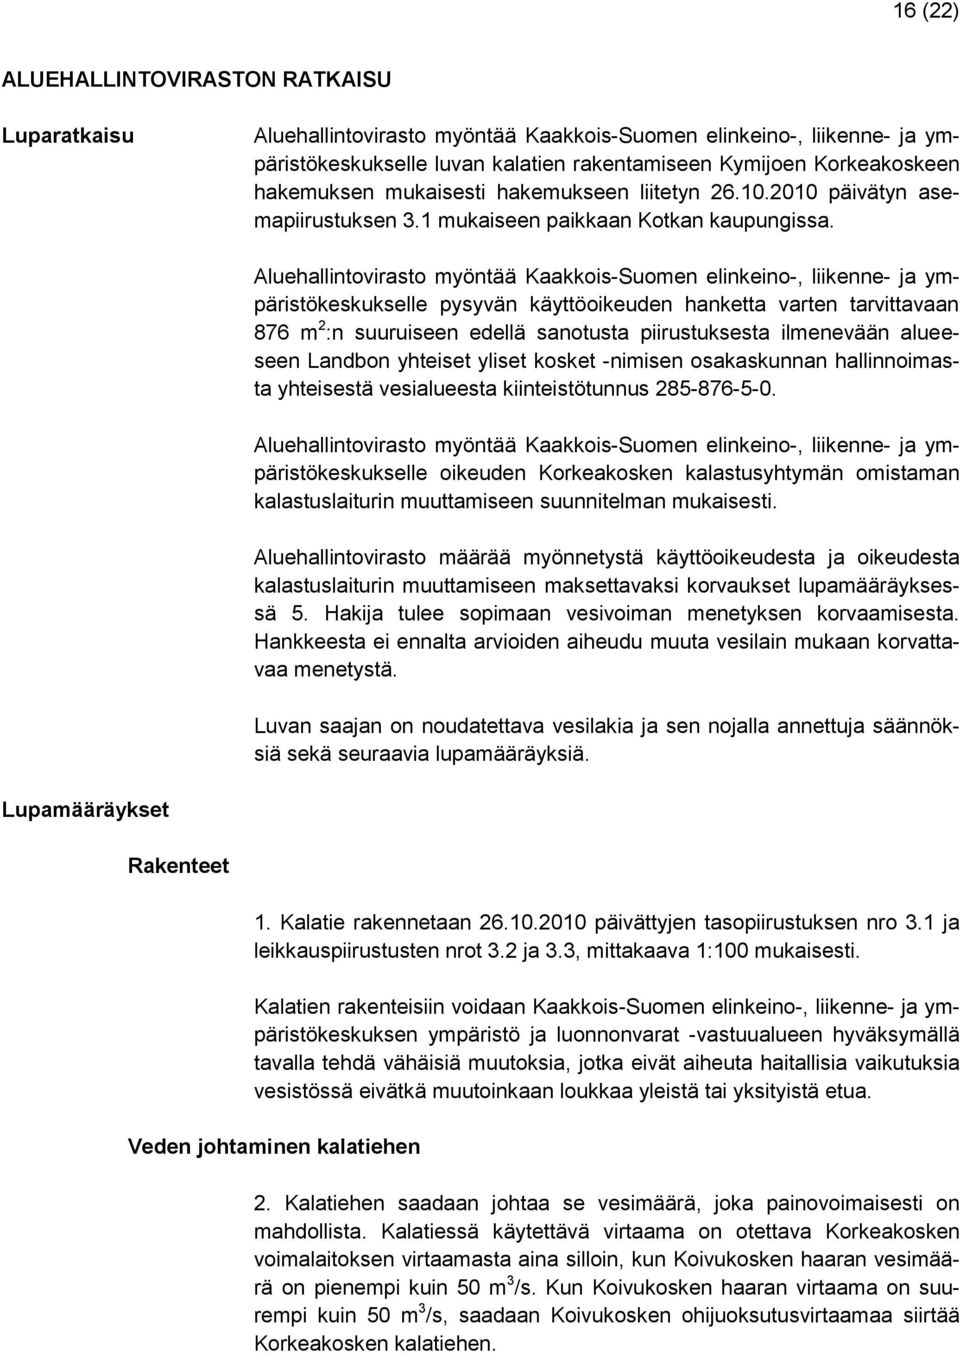 Aluehallintovirasto myöntää Kaakkois-Suomen elinkeino-, liikenne- ja ympäristökeskukselle pysyvän käyttöoikeuden hanketta varten tarvittavaan 876 m 2 :n suuruiseen edellä sanotusta piirustuksesta